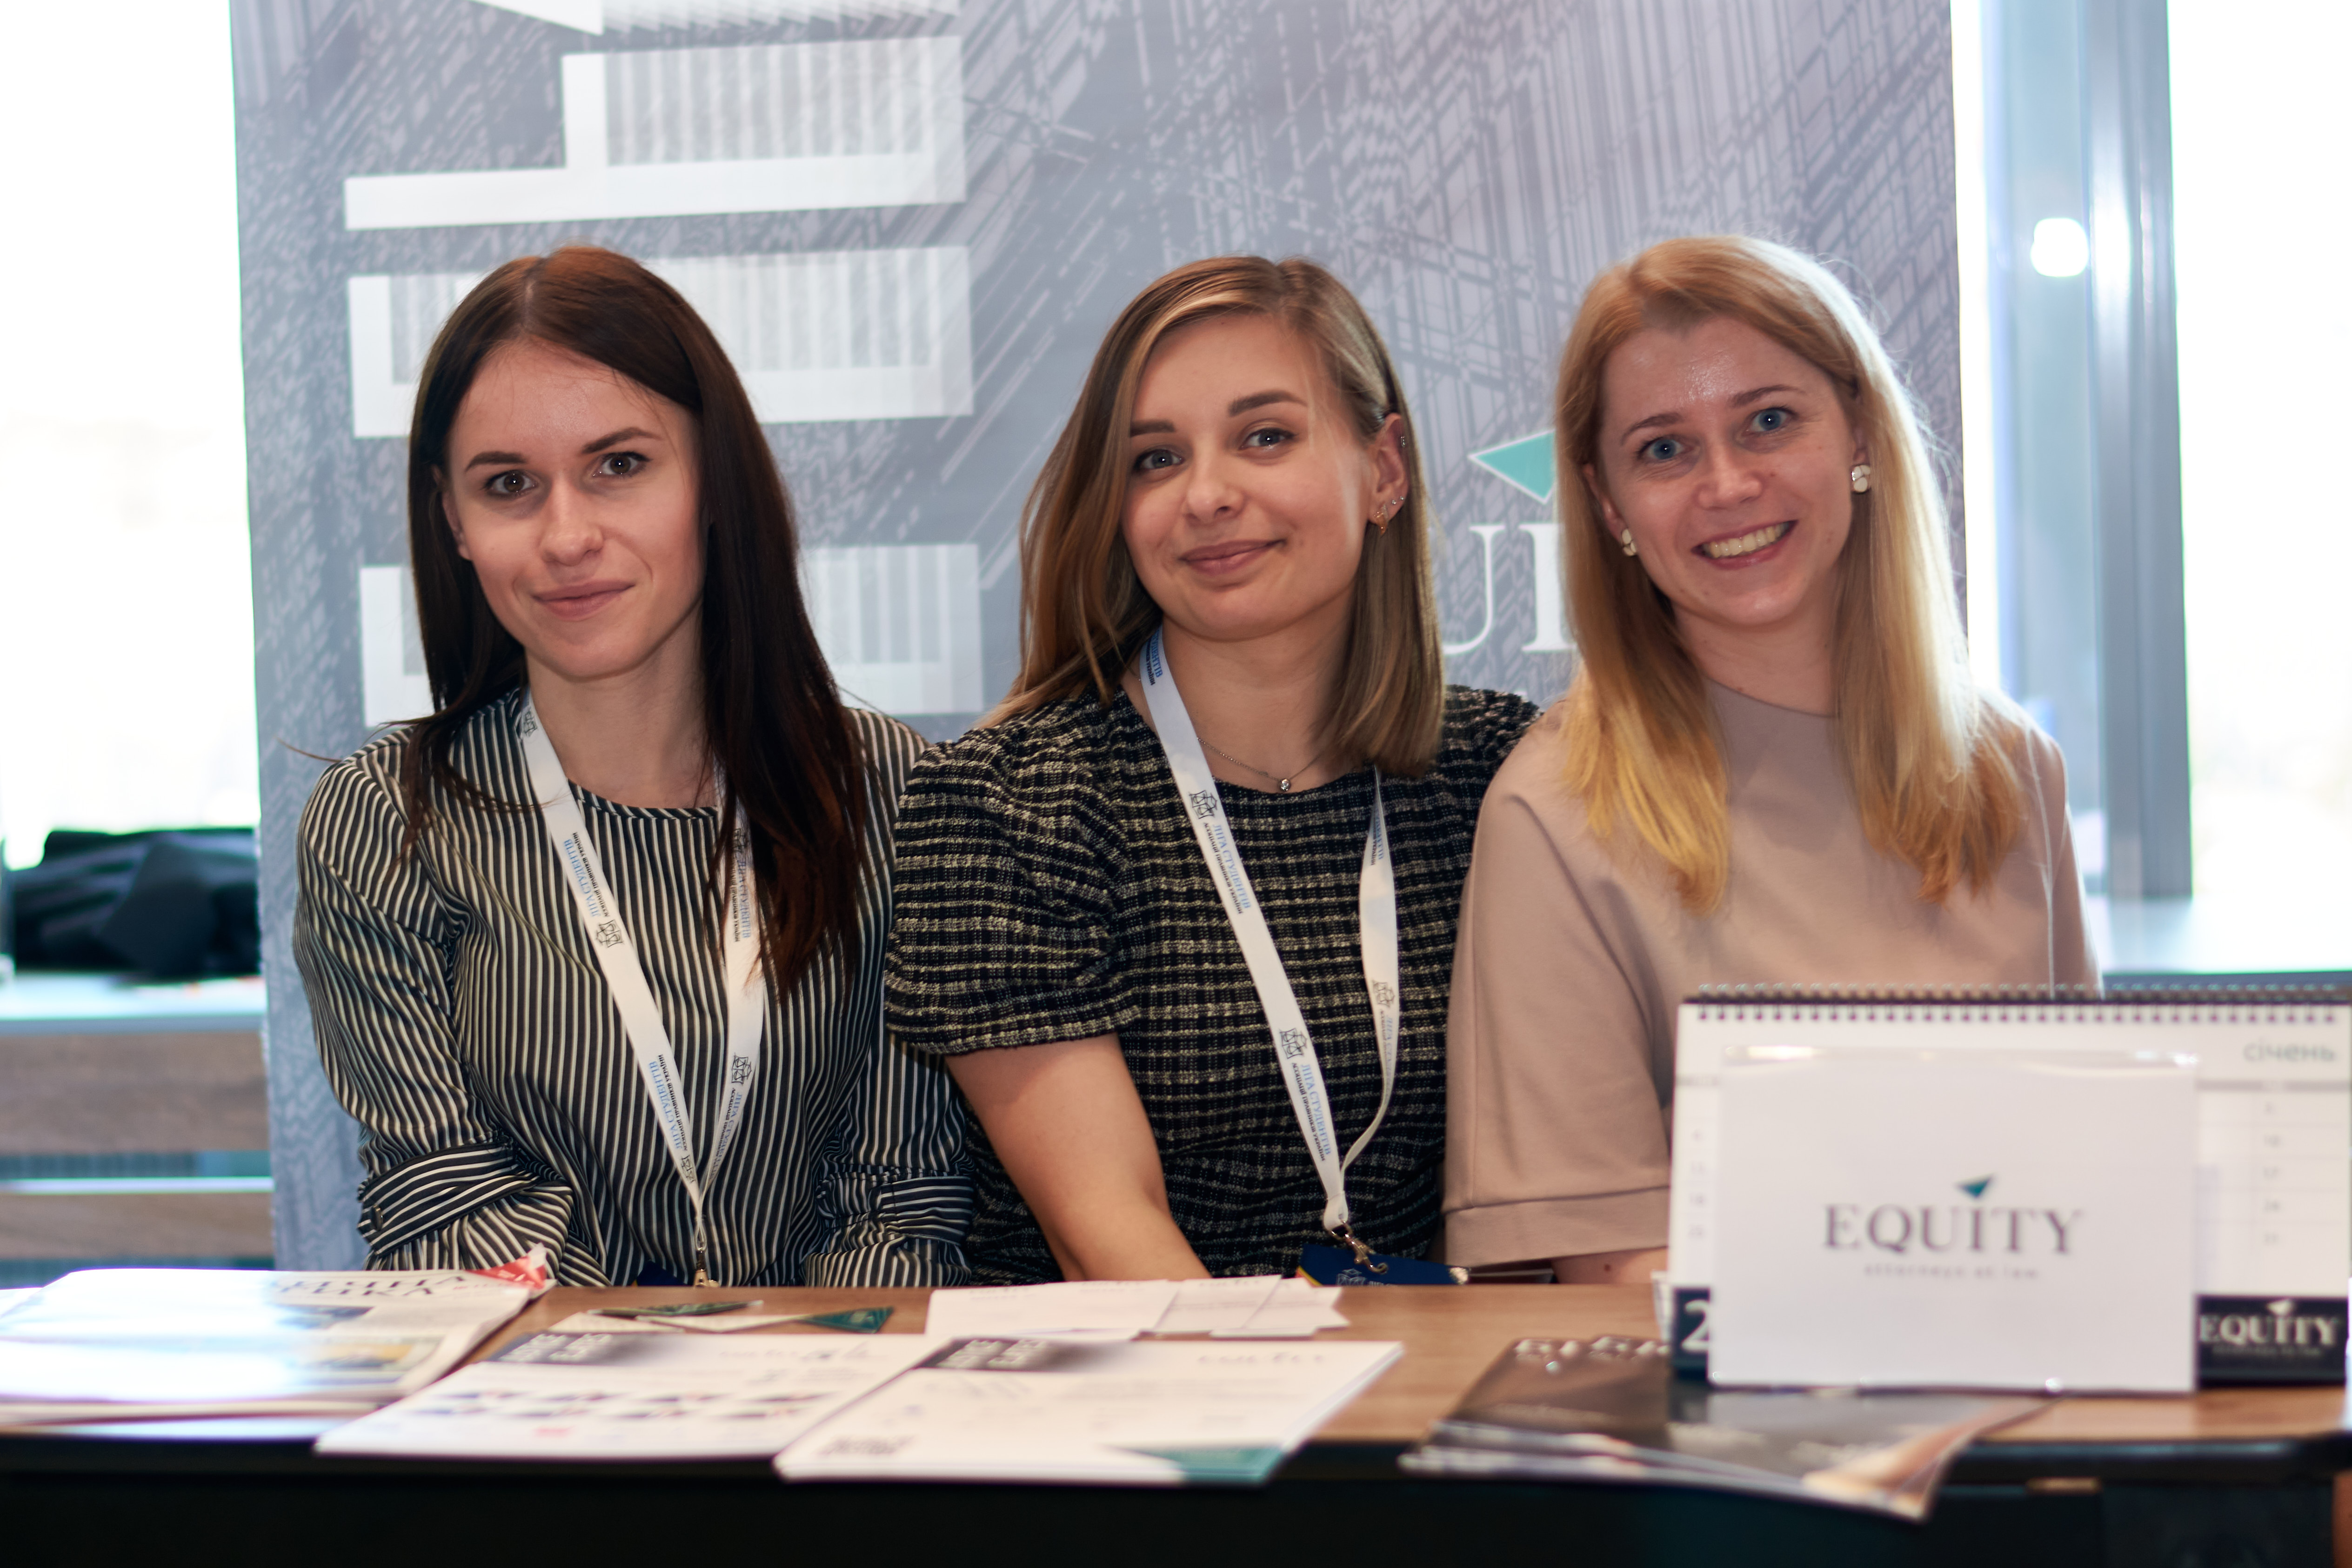 EQUITY відвідала Legal HR Fair 2021 - найбільший в Україні ярмарок юридичних вакансій